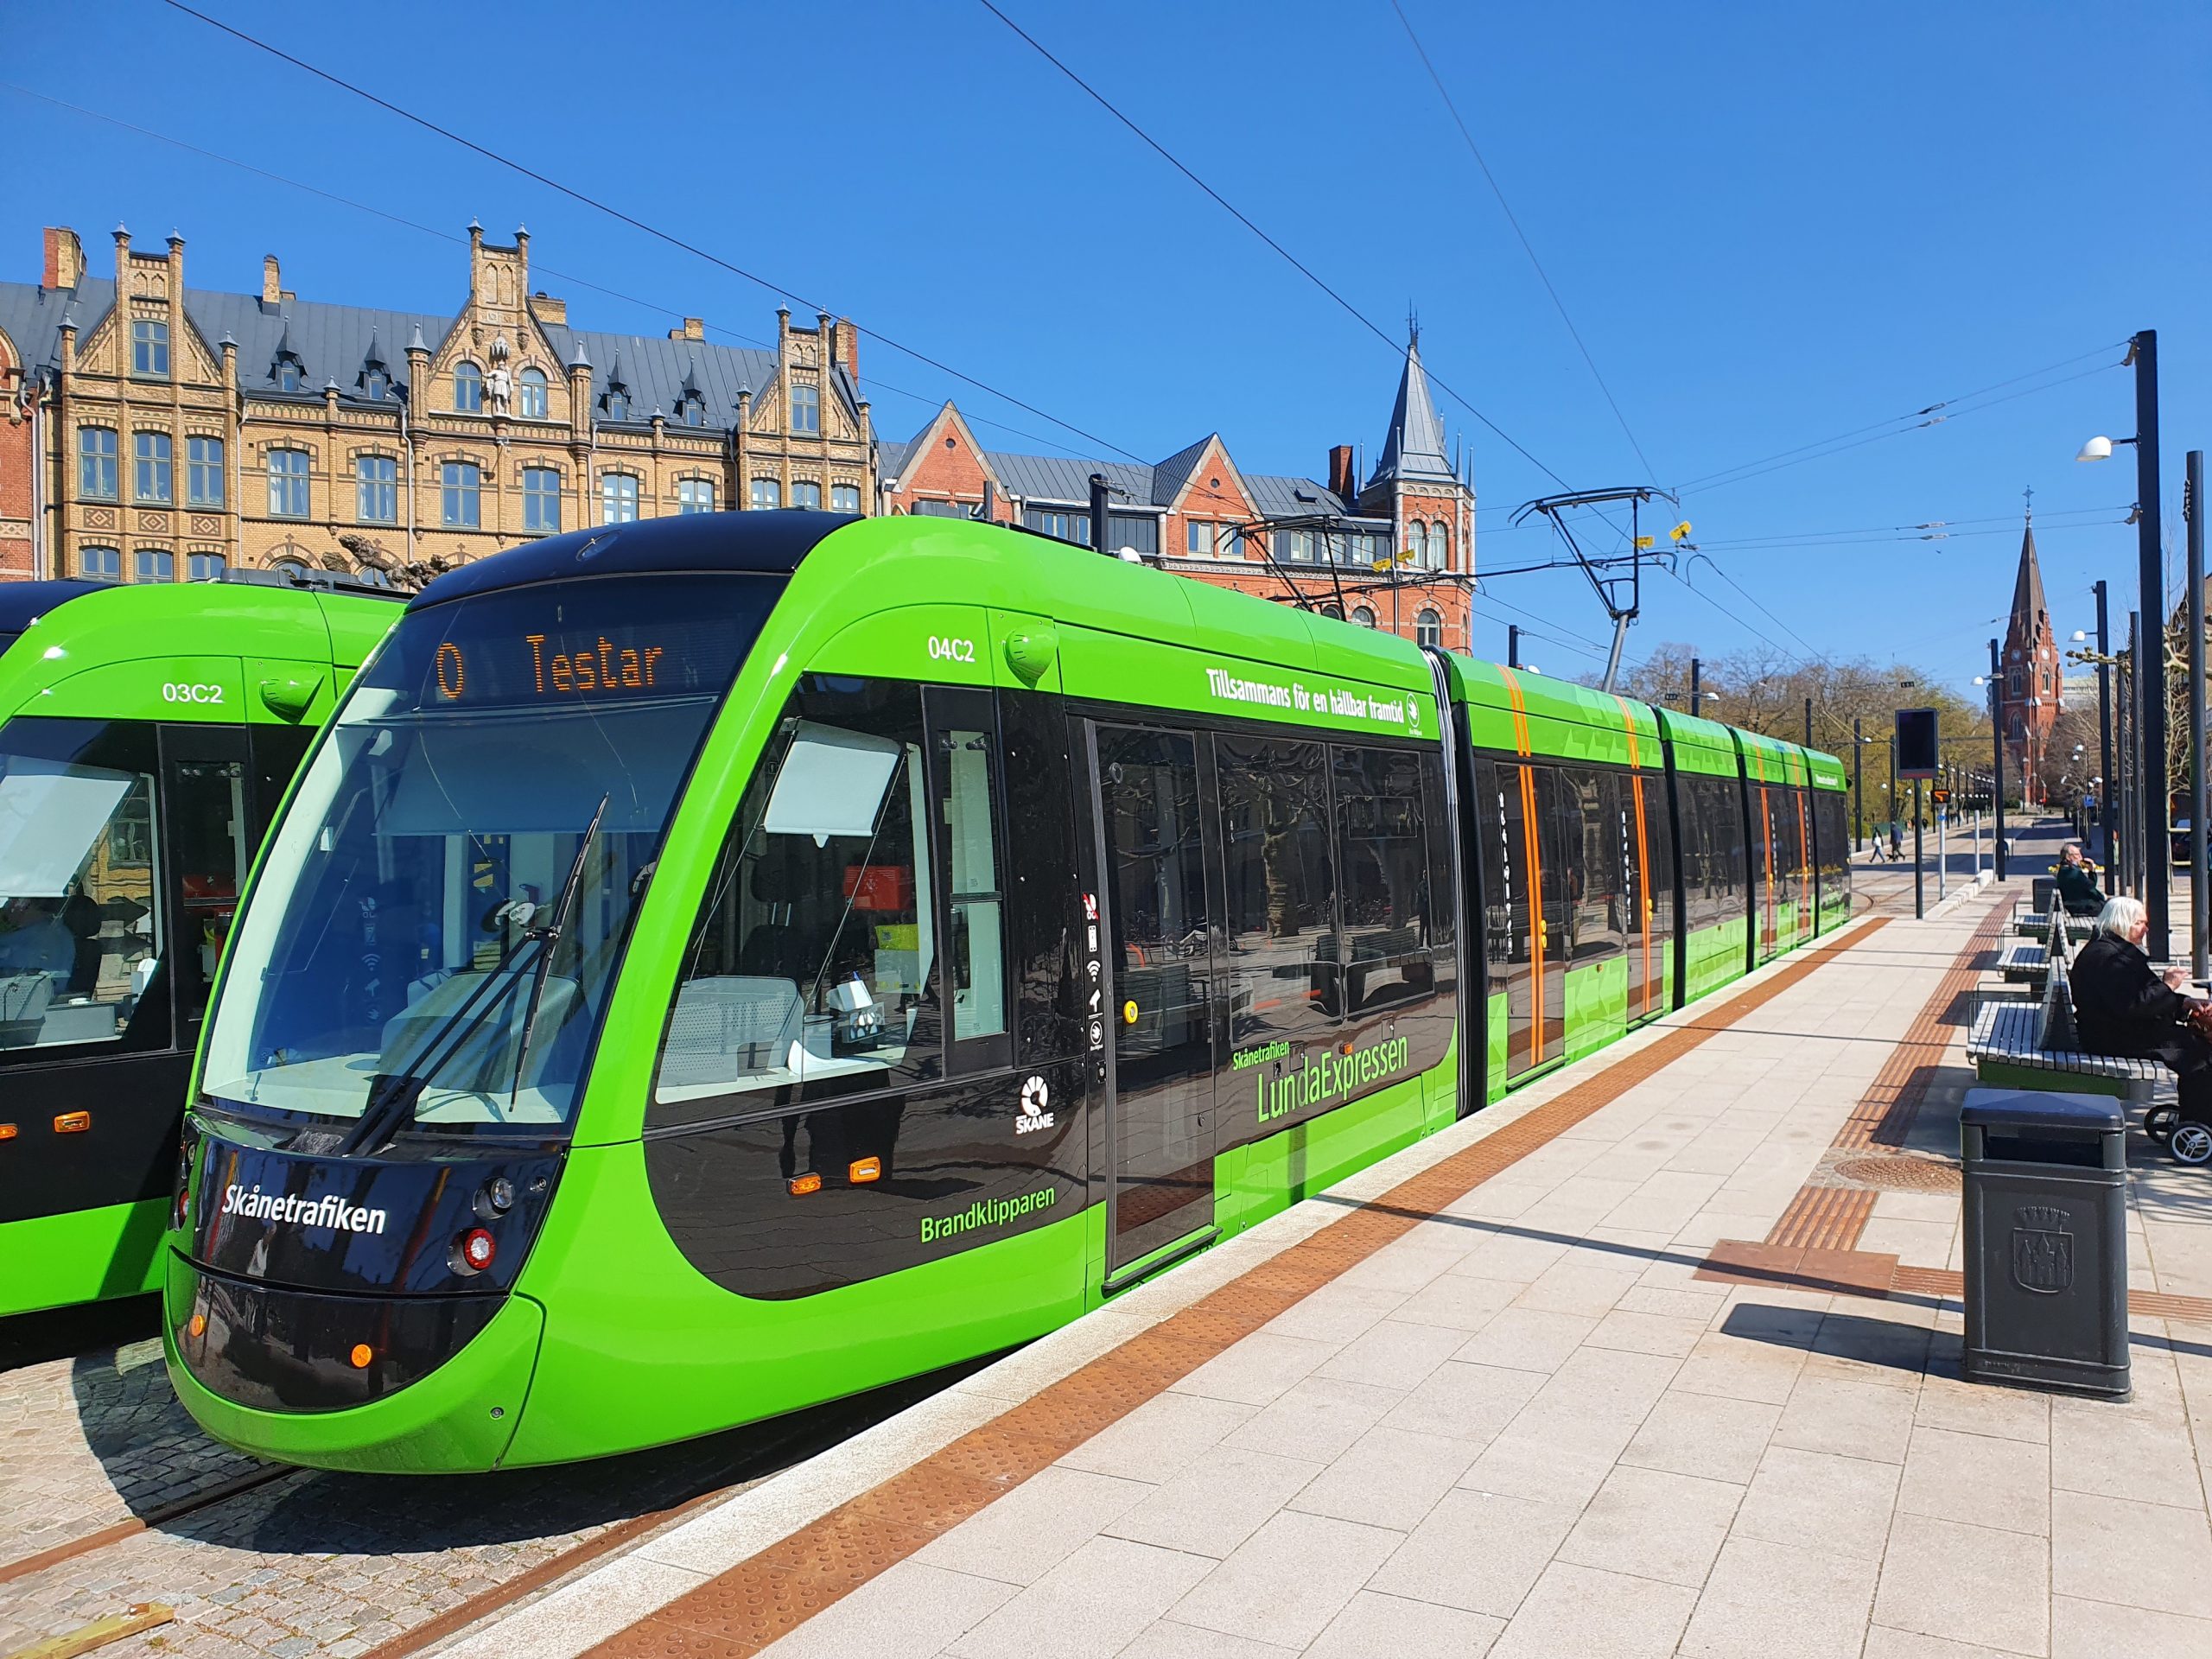 Lund-tramway-Omexom-Sweden